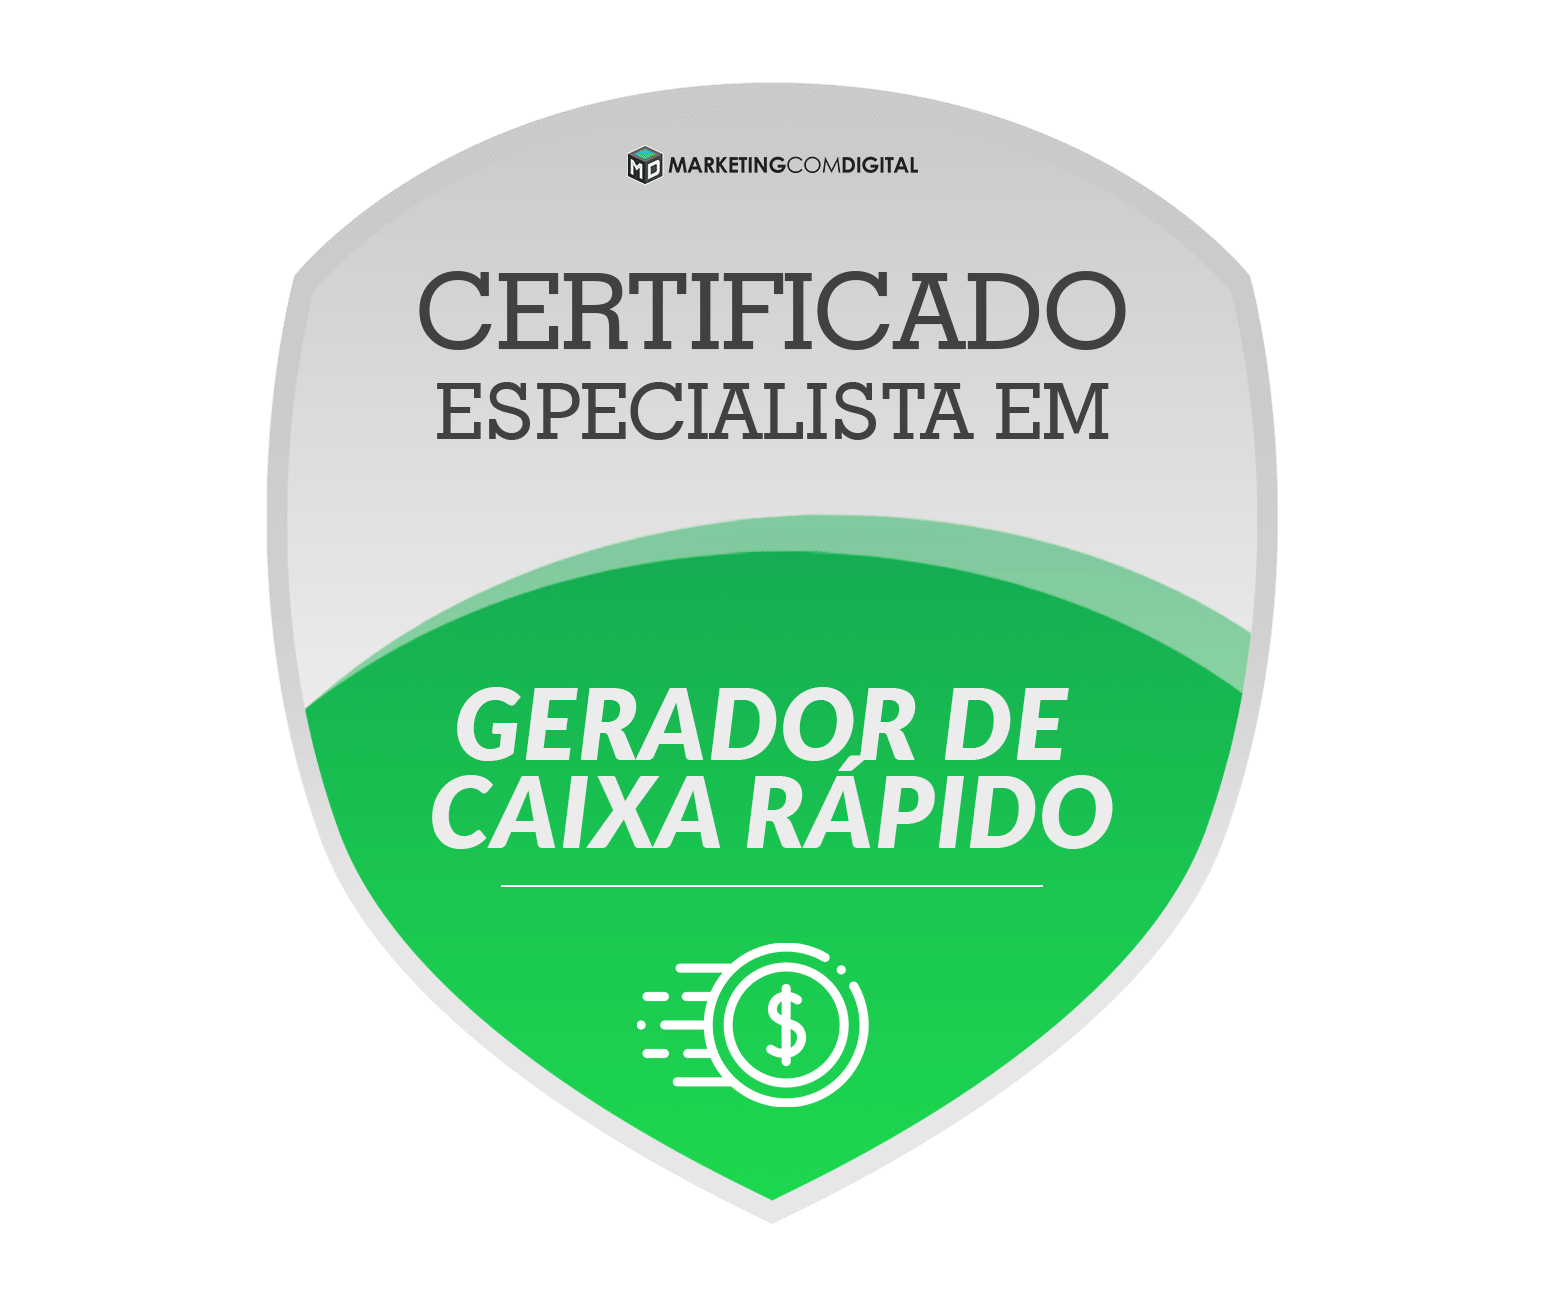 LOGO CERTIFICADO - Certificação Especialista em Geração de Caixa Rápido